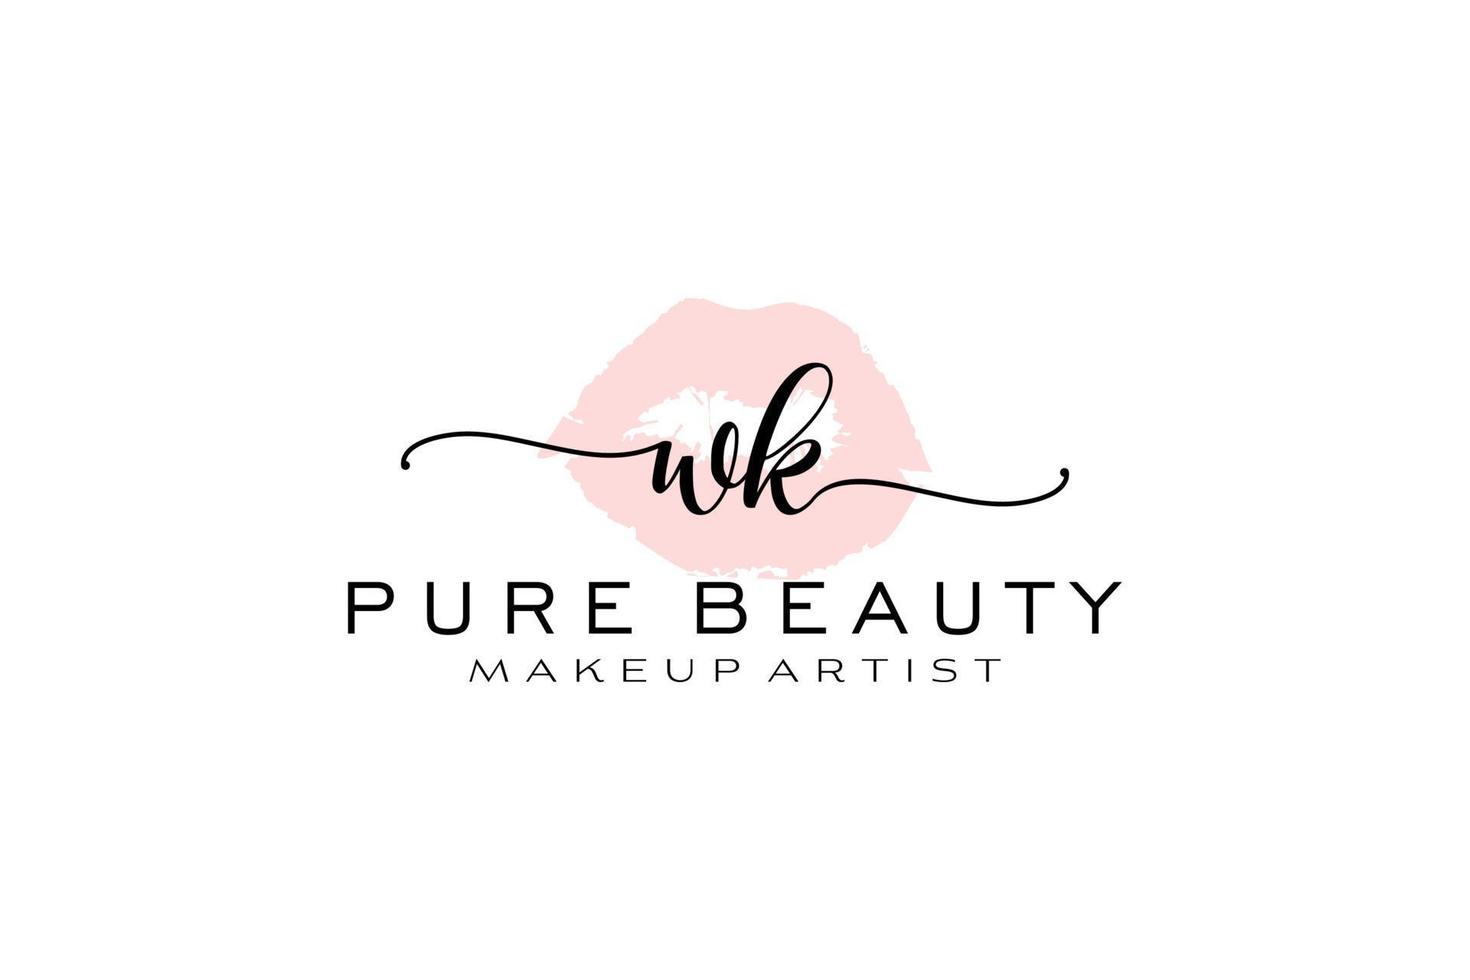 création initiale de logo préfabriqué pour les lèvres aquarelles wk, logo pour la marque d'entreprise de maquilleur, création de logo de boutique de beauté blush, logo de calligraphie avec modèle créatif. vecteur